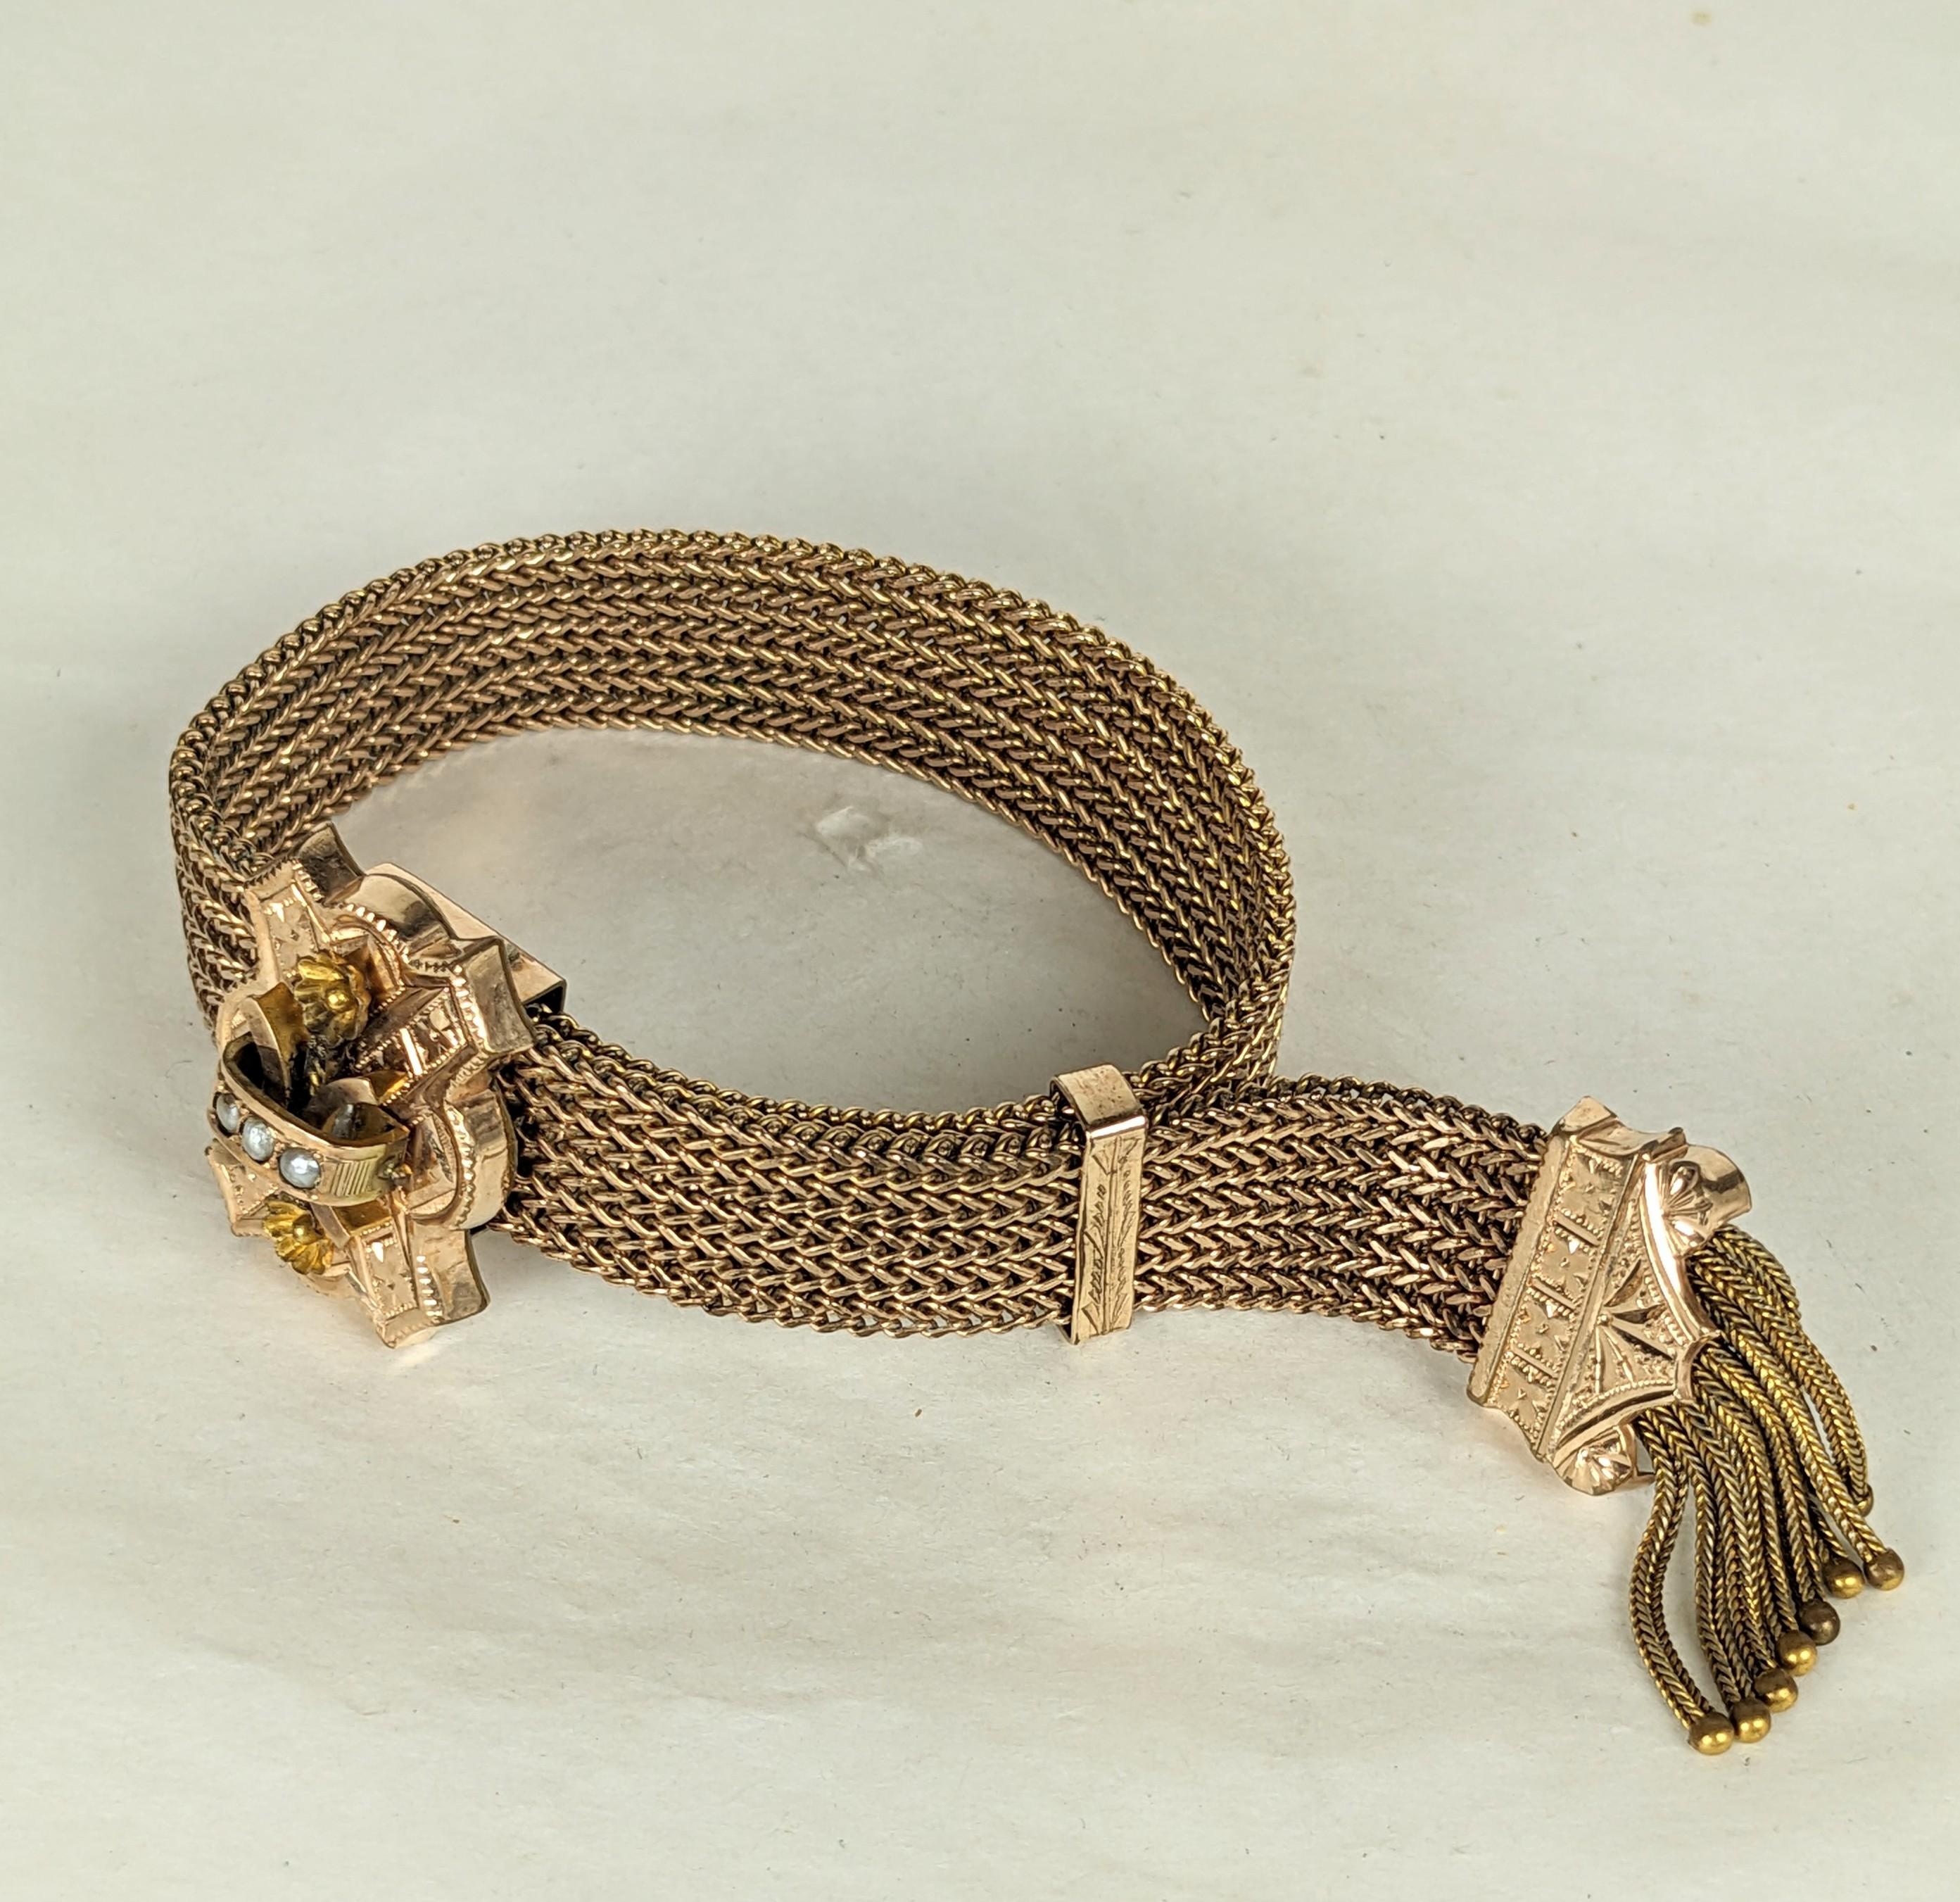 Viktorianisches, goldgefülltes Slide-Armband aus den 1880er Jahren. Rosa-goldenes Maschenarmband mit verstellbarem Schieber in der Mitte, besetzt mit natürlichen Perlen und Blumen, mit fransigem Kettengriff. Das Armband lässt sich dehnen und